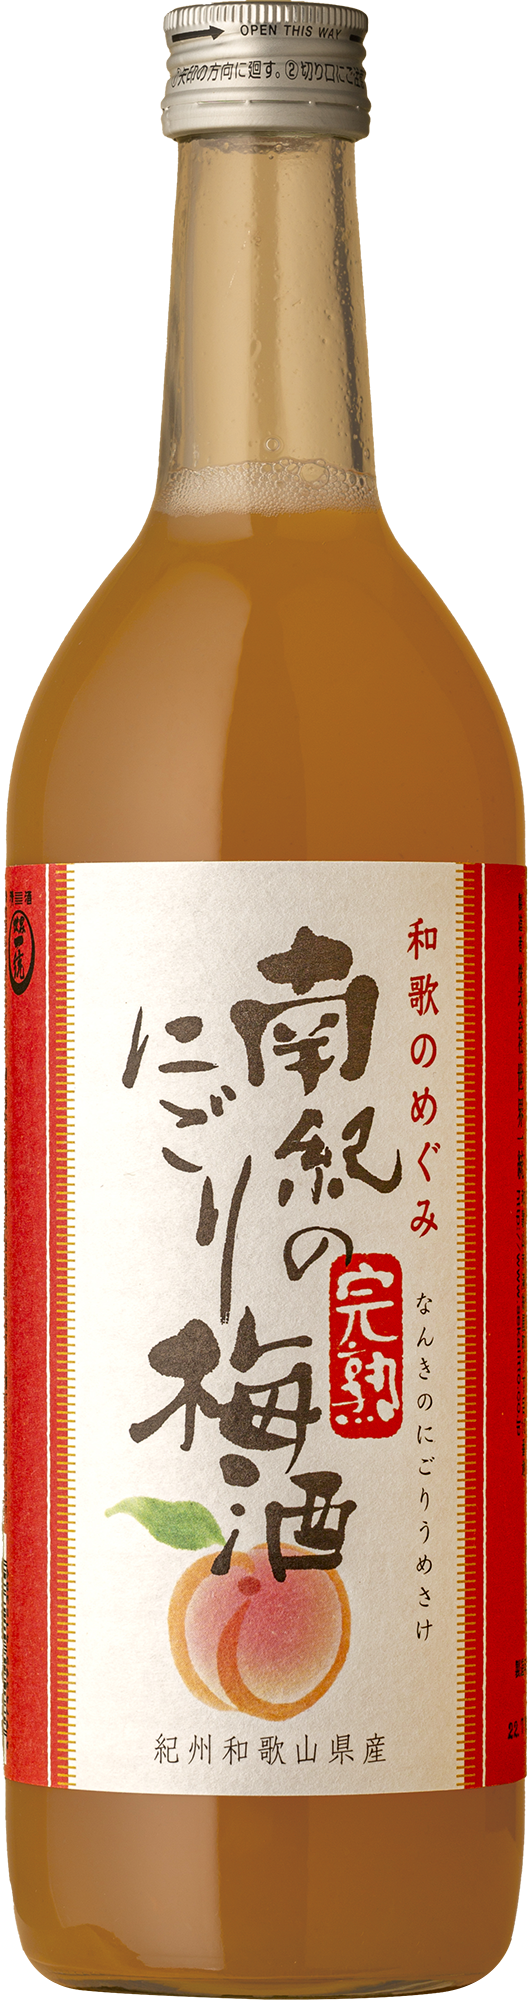 Sekai Itto - Nanki No Kanjuku Nigori Umeshu 720mL Not Wine